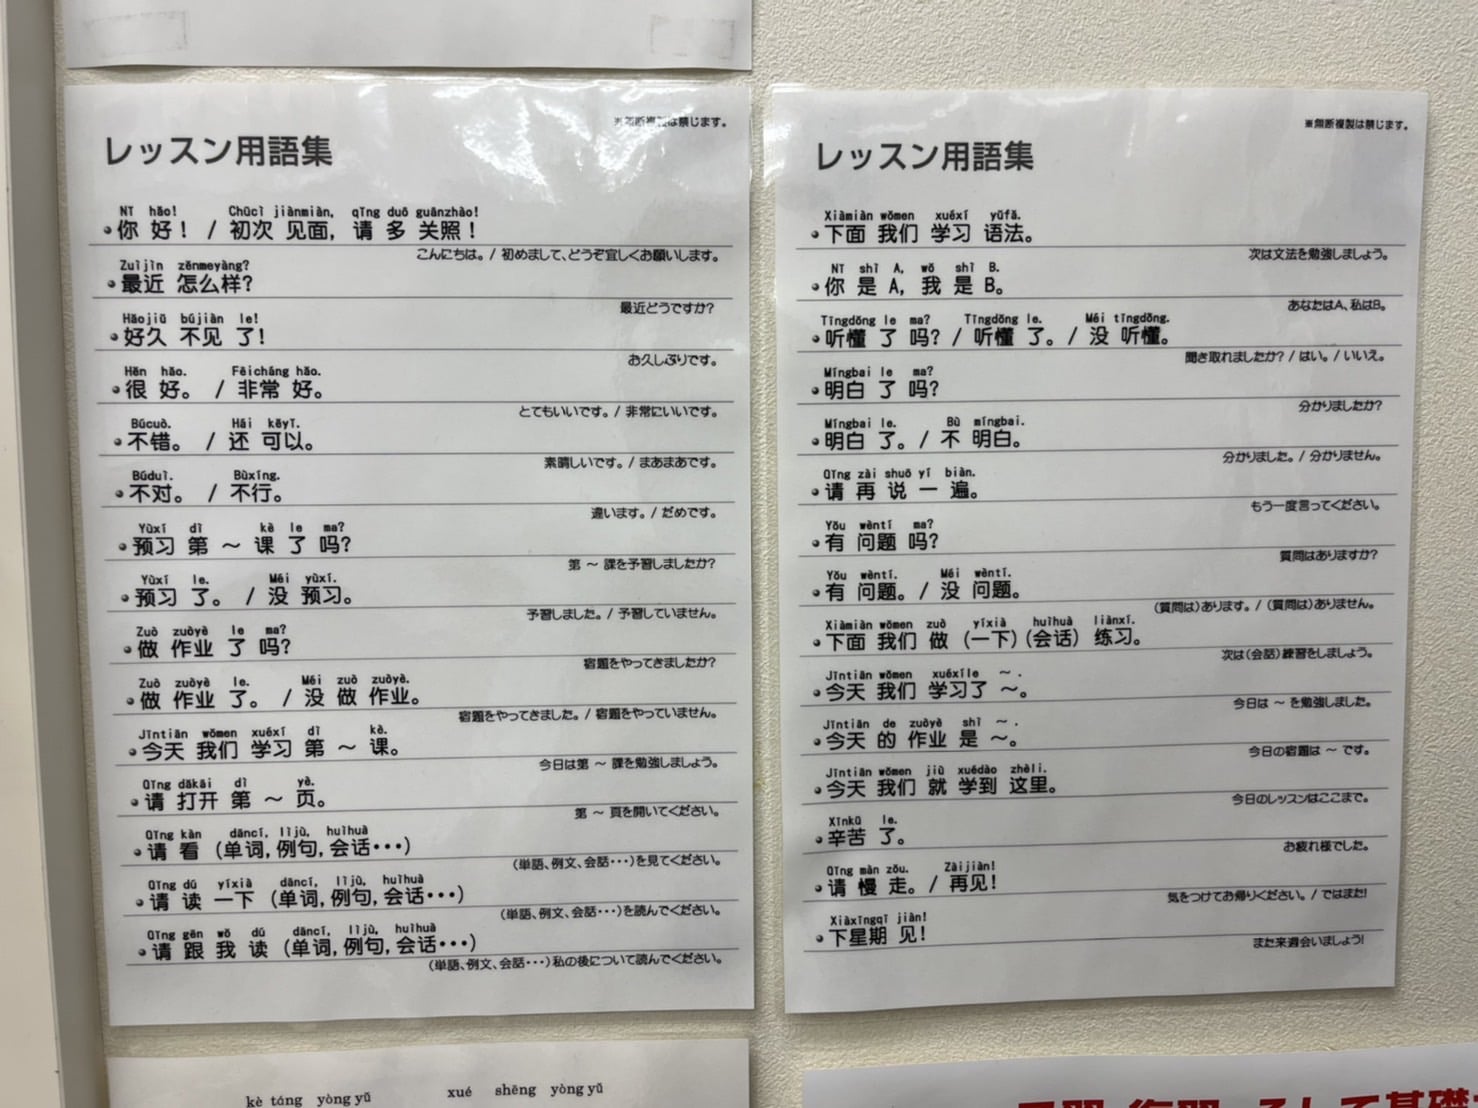 すべての教室内にレッスンで使う中国語が掲示されています。発音を覚えたその日から即、中国語を使うことができますよ！